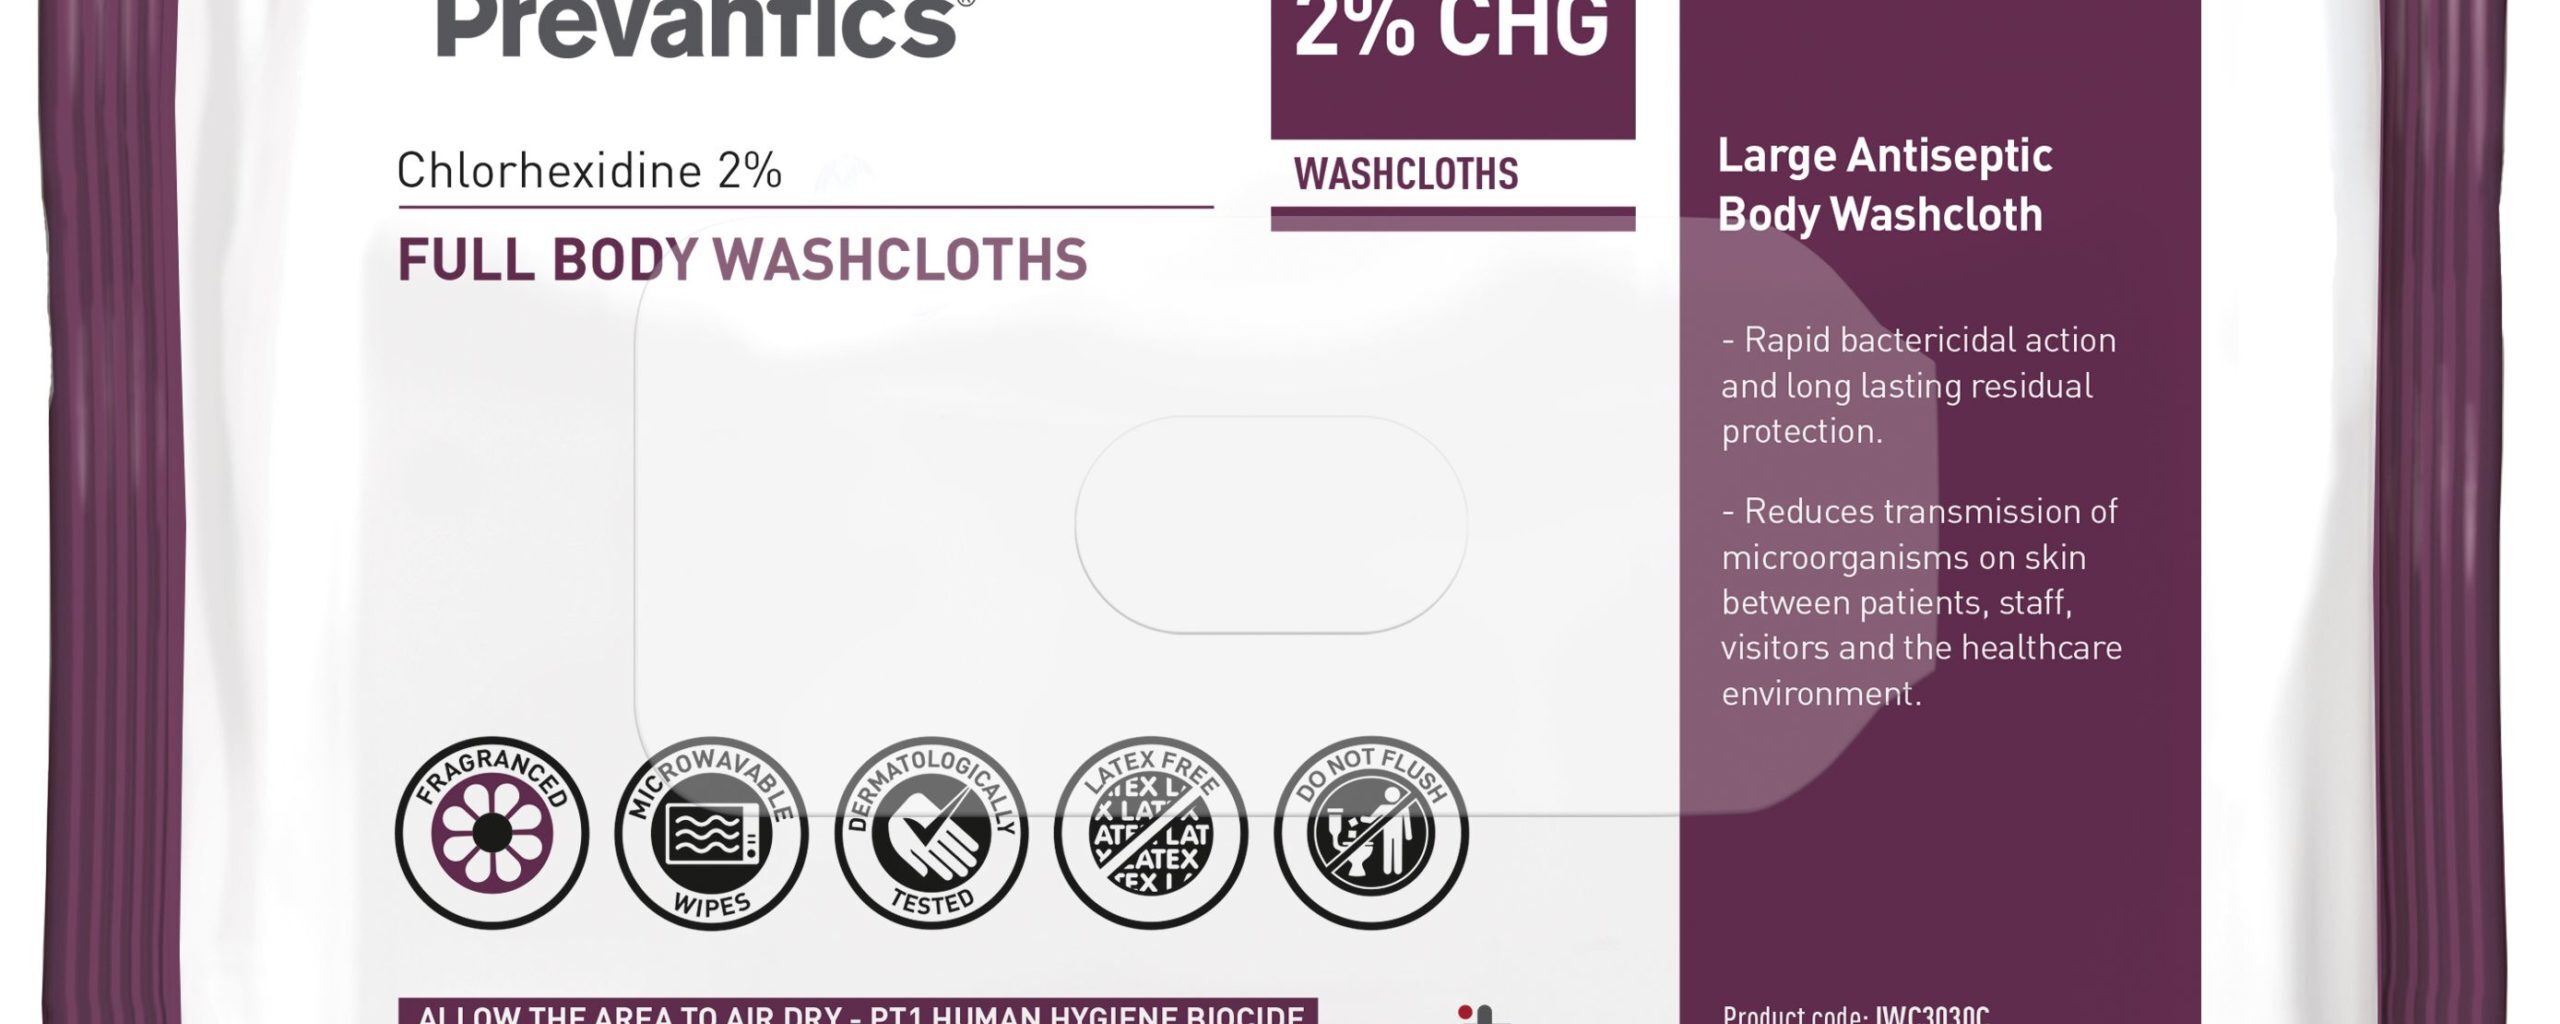 Prevantics® 2% CHG full Body Washcloths